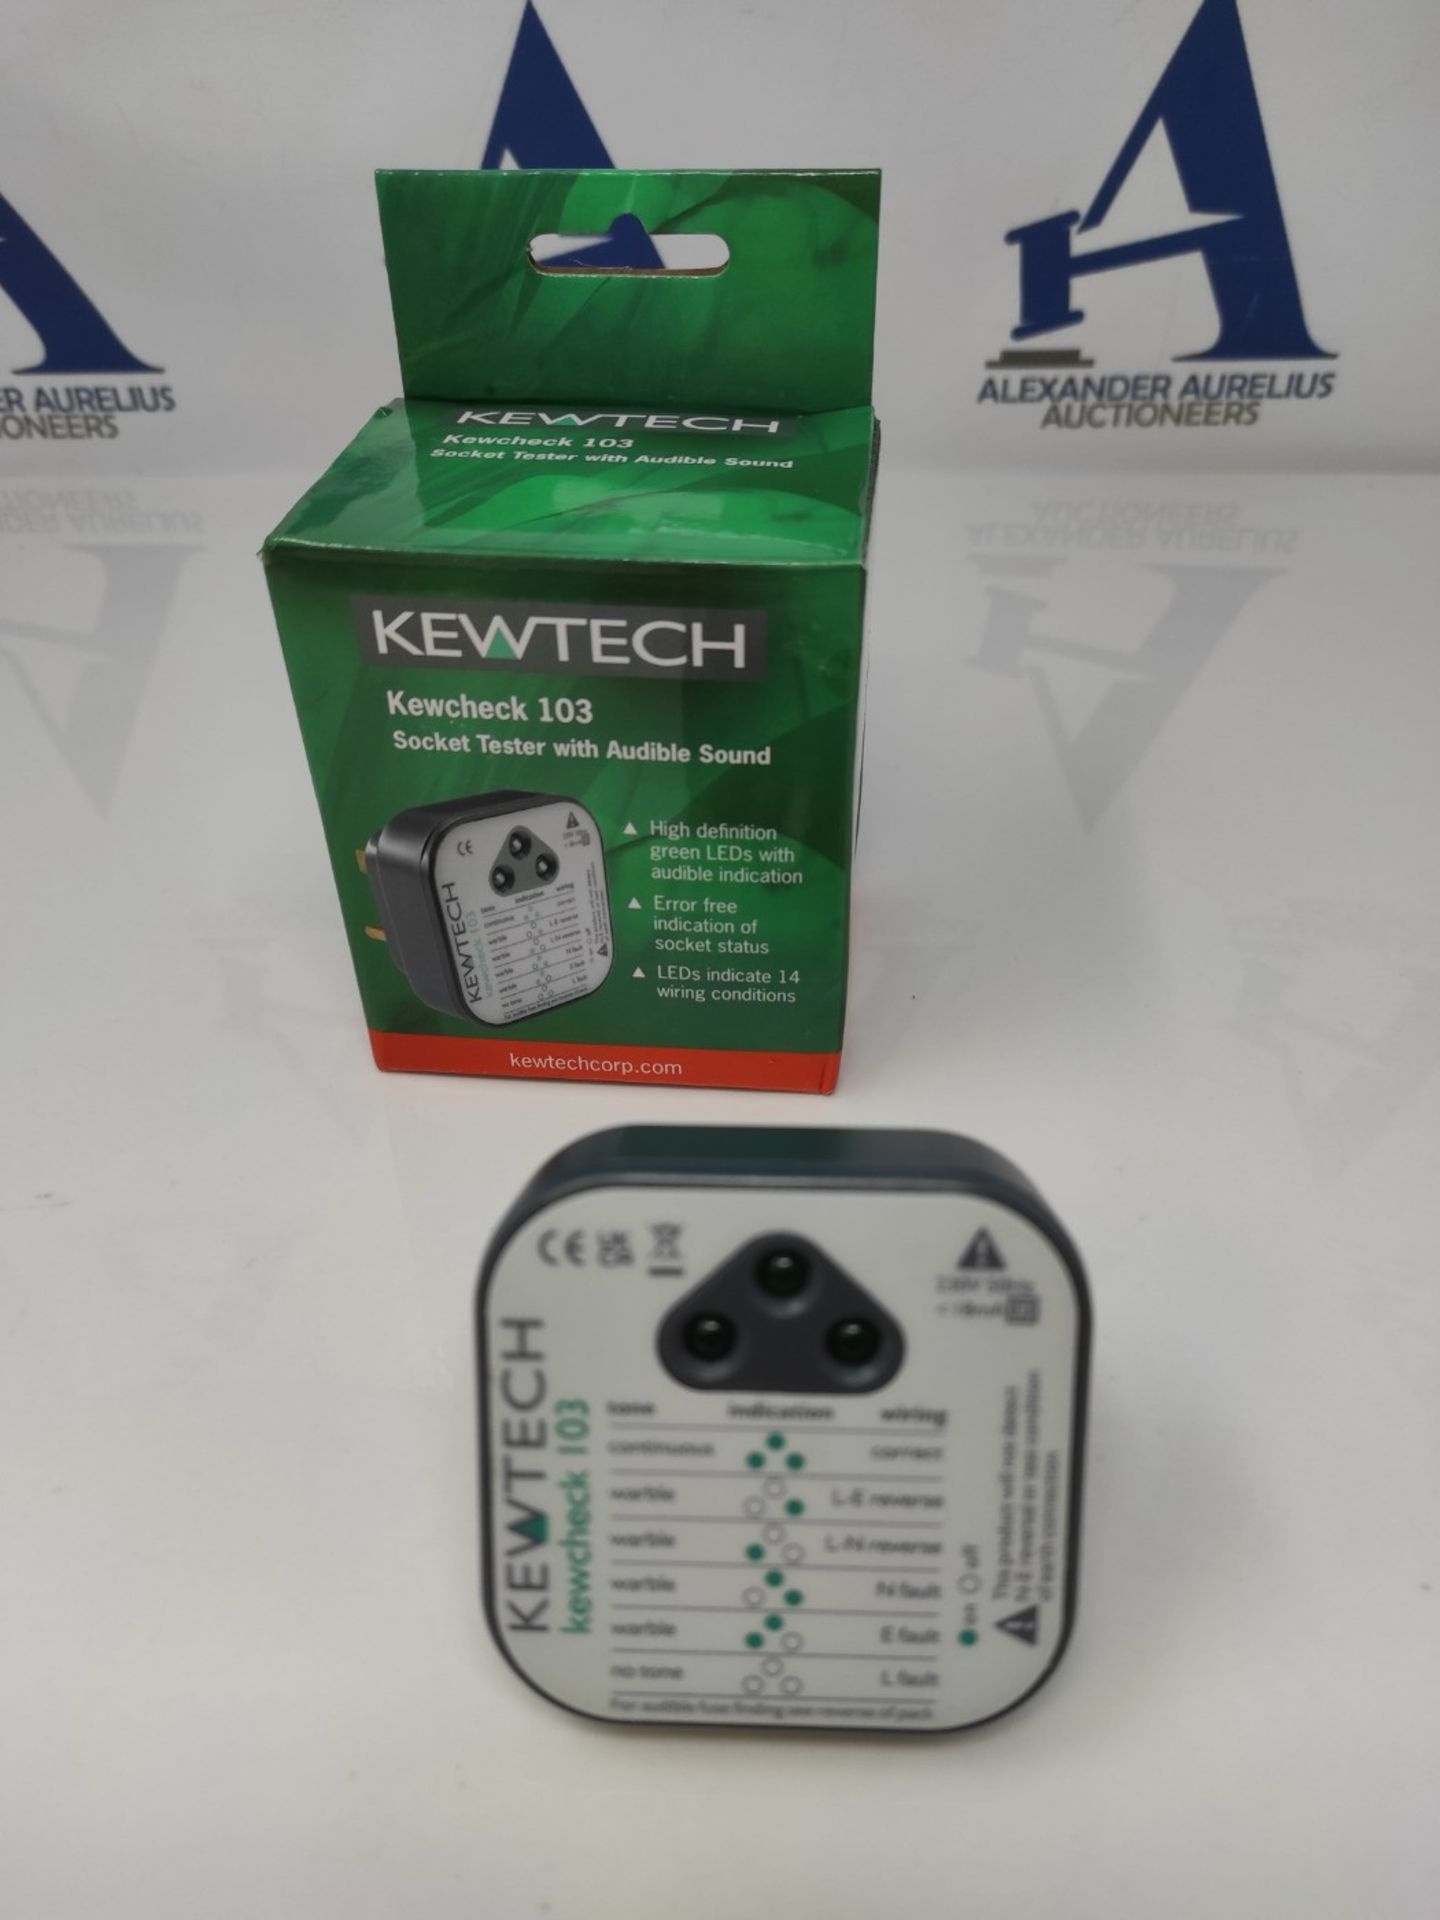 Kewtech KEWCHECK103 Mains Wiring Socket Tester - Image 2 of 3